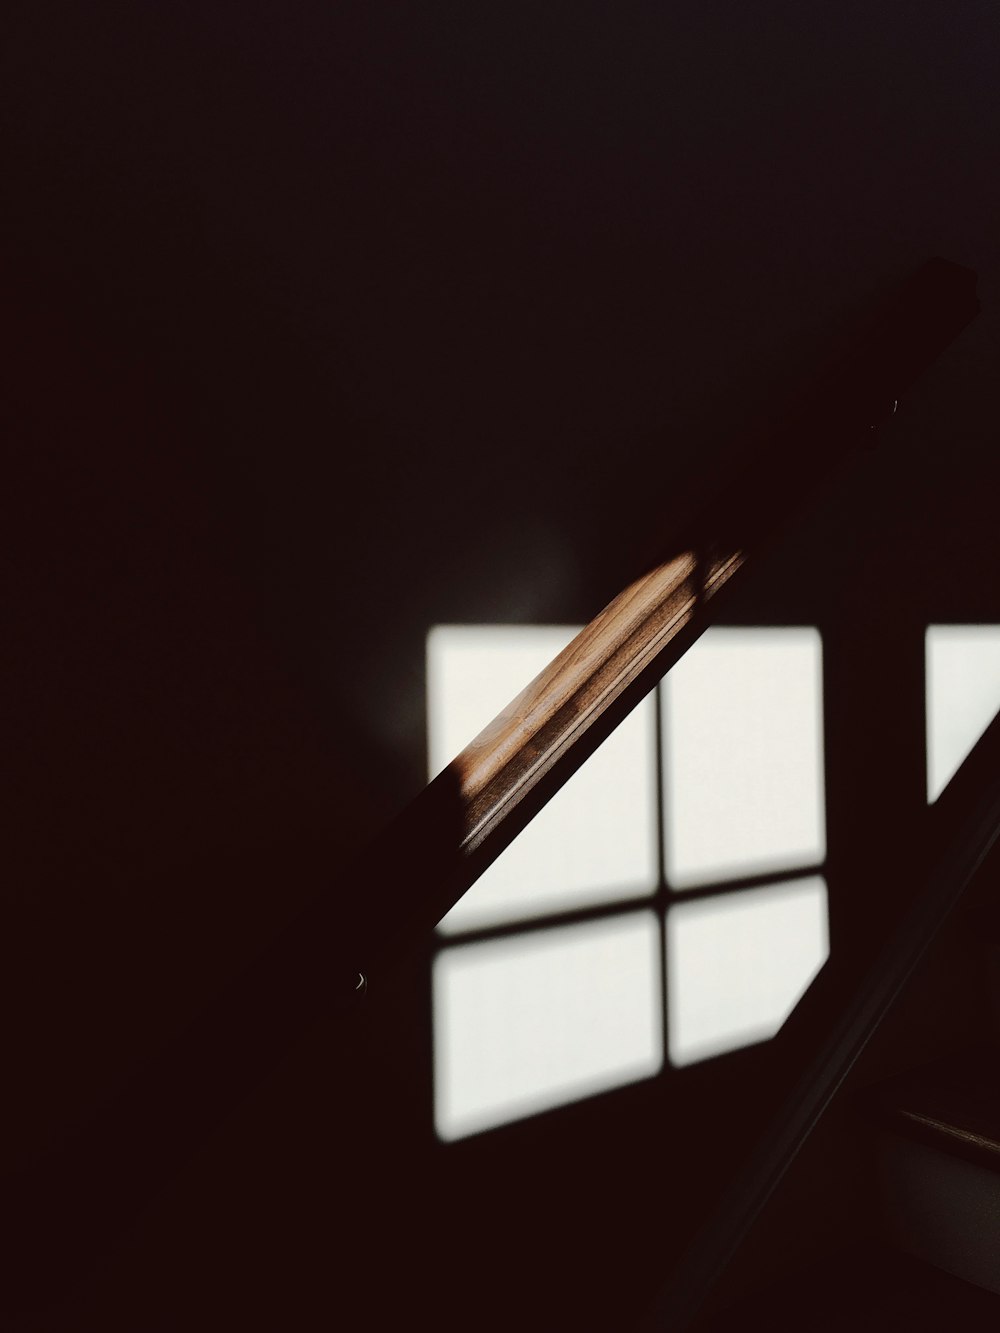 Eine schwache Aufnahme eines hölzernen Geländers, das von schwachem Licht aus dem Fenster beleuchtet wird